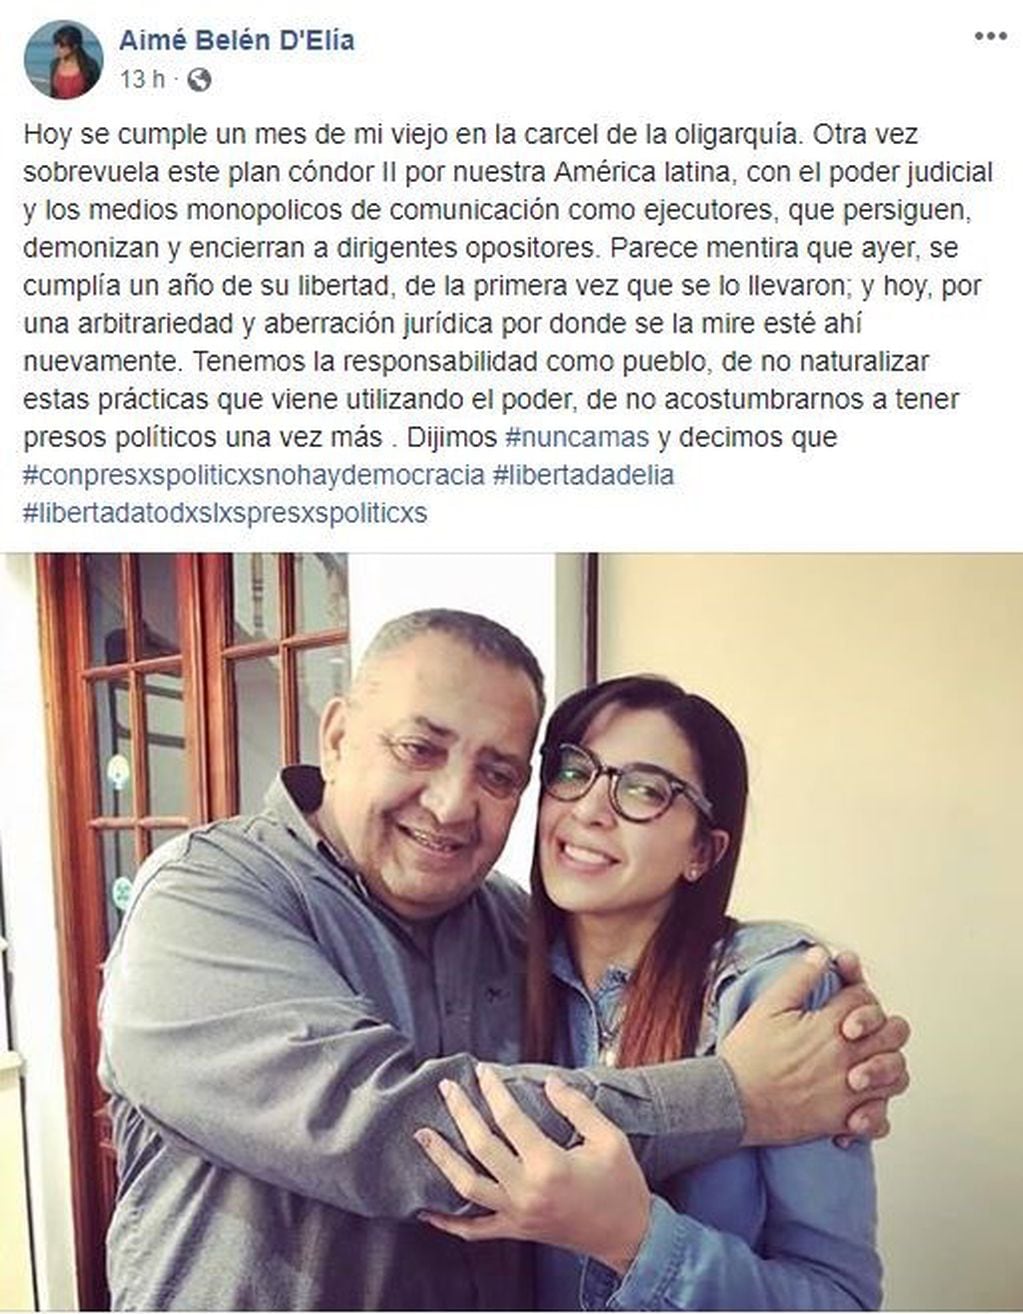 La carta de Belén Aimé D'Elía a un mes de la encarcelación de su papá (Facebook)